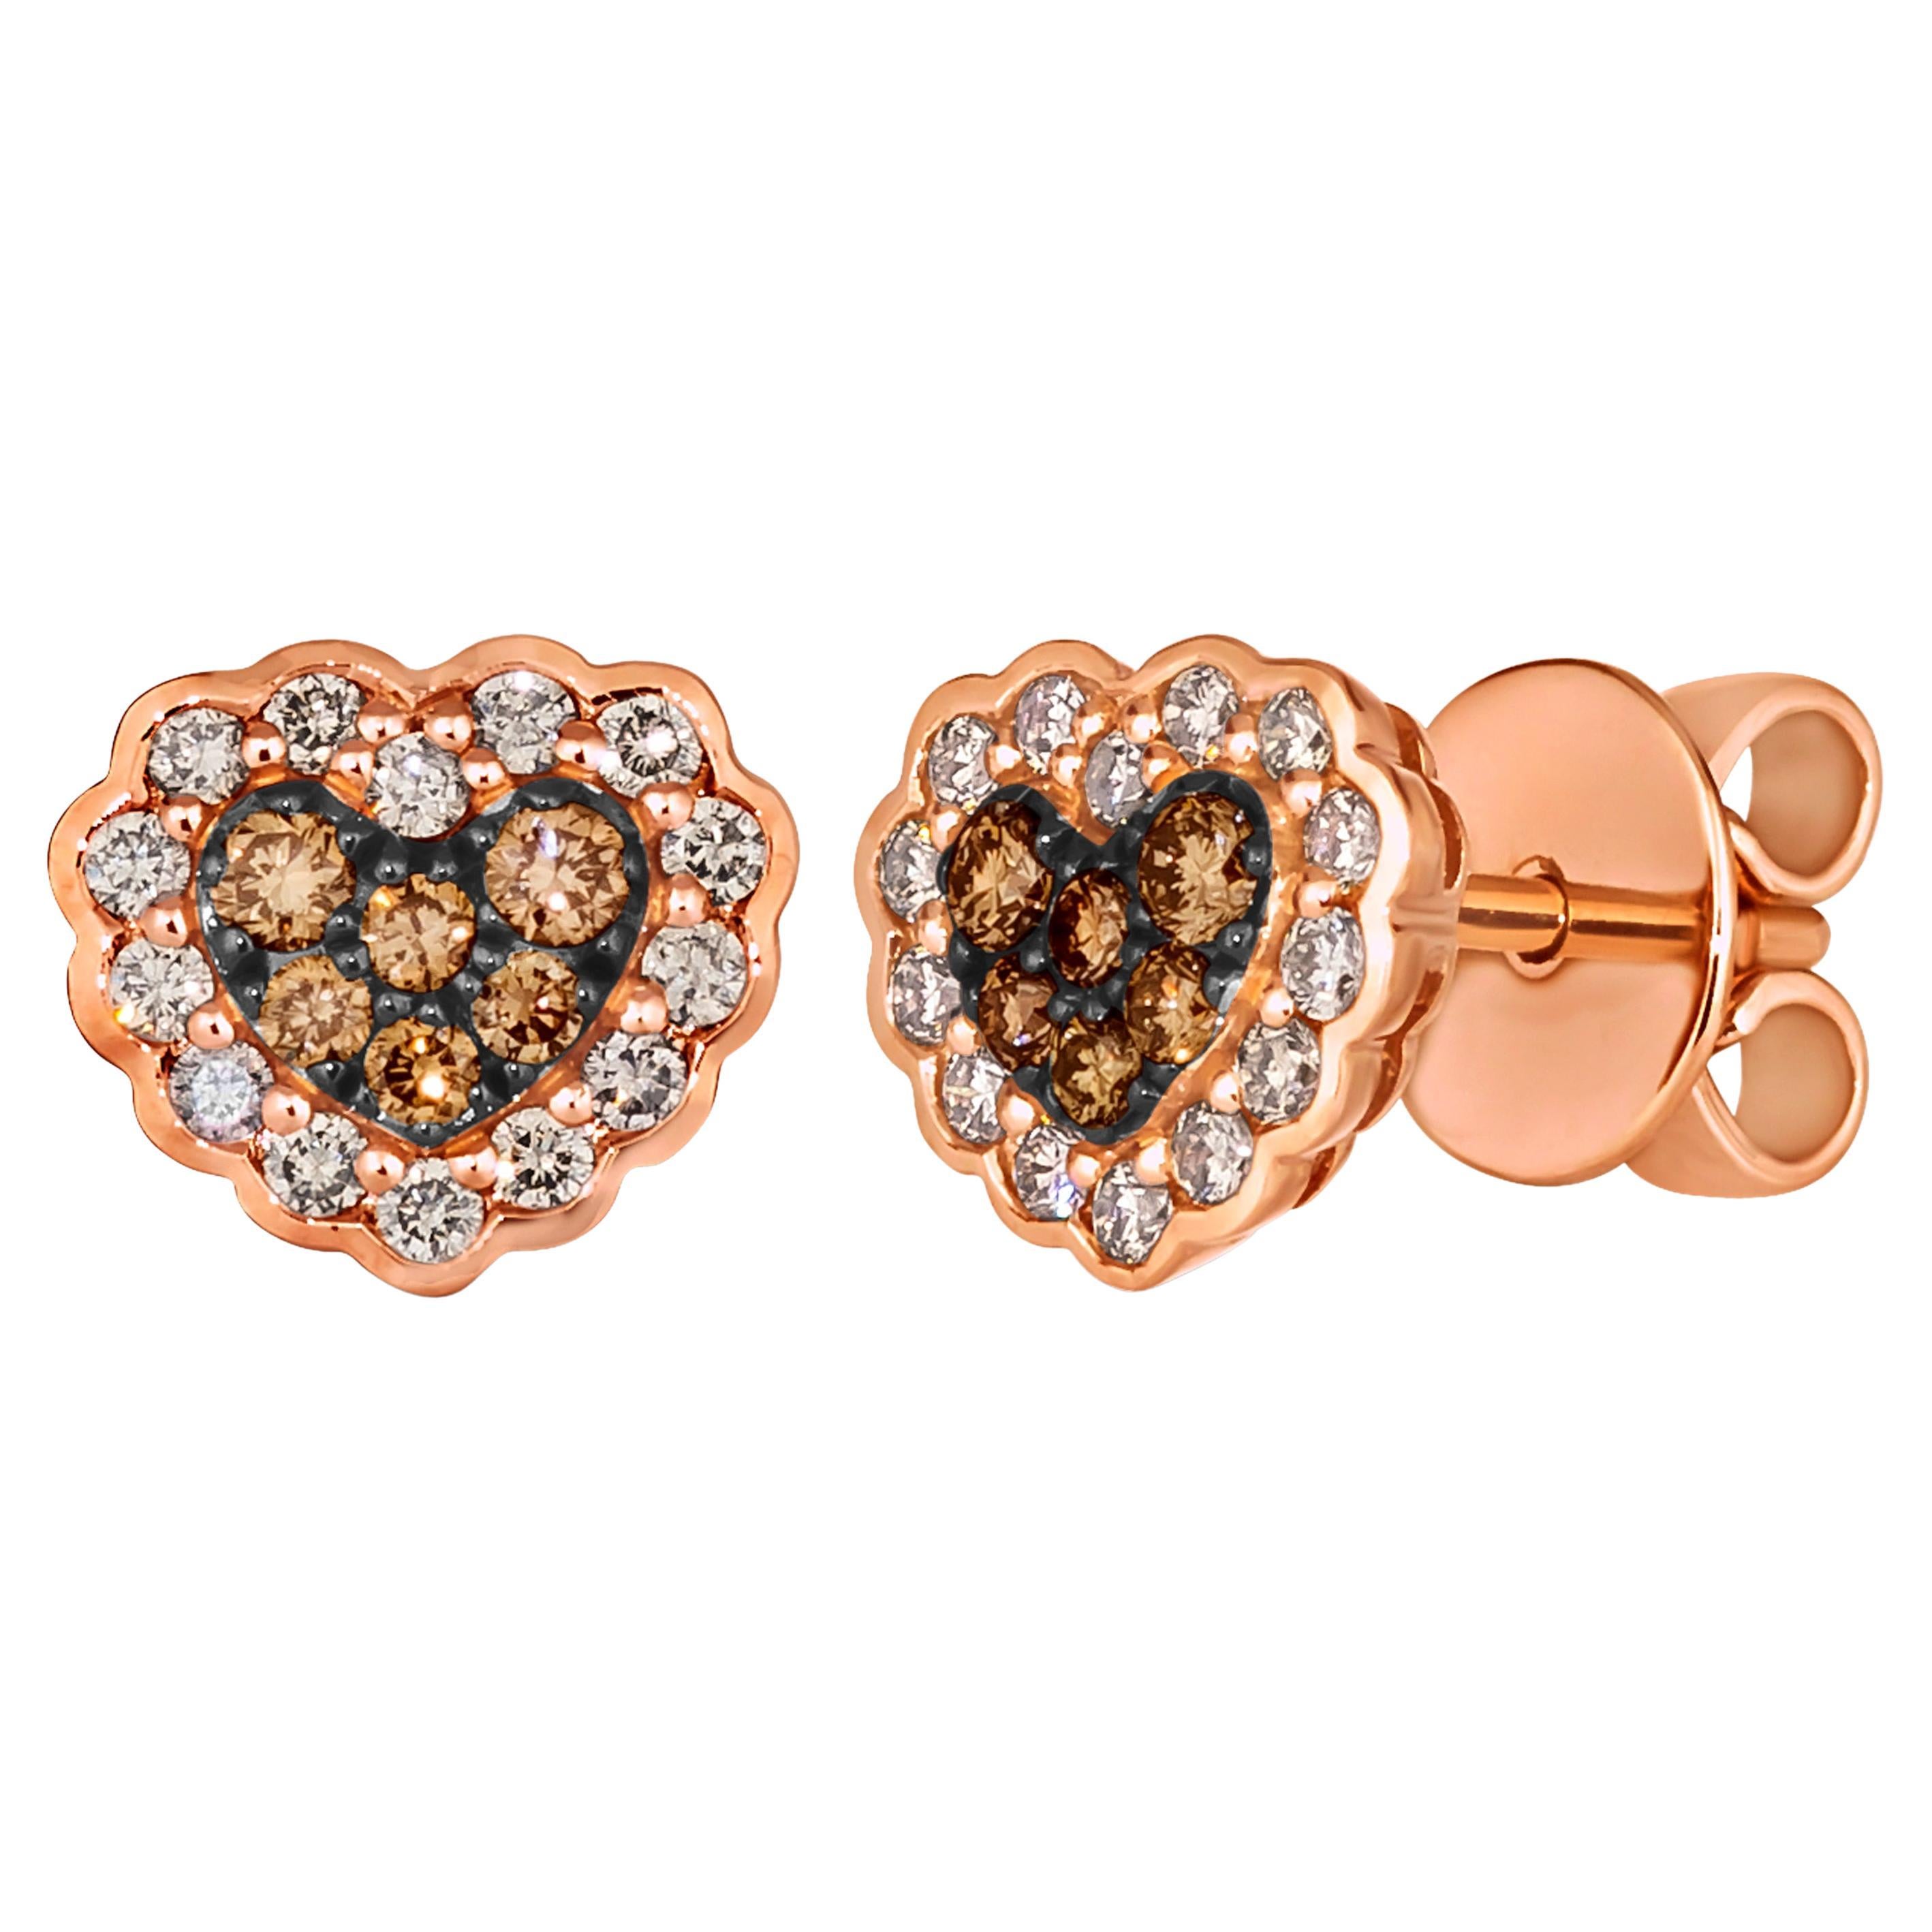 Le Vian Earrings featuring Chocolate Diamonds, Nude Diamonds set in 14K